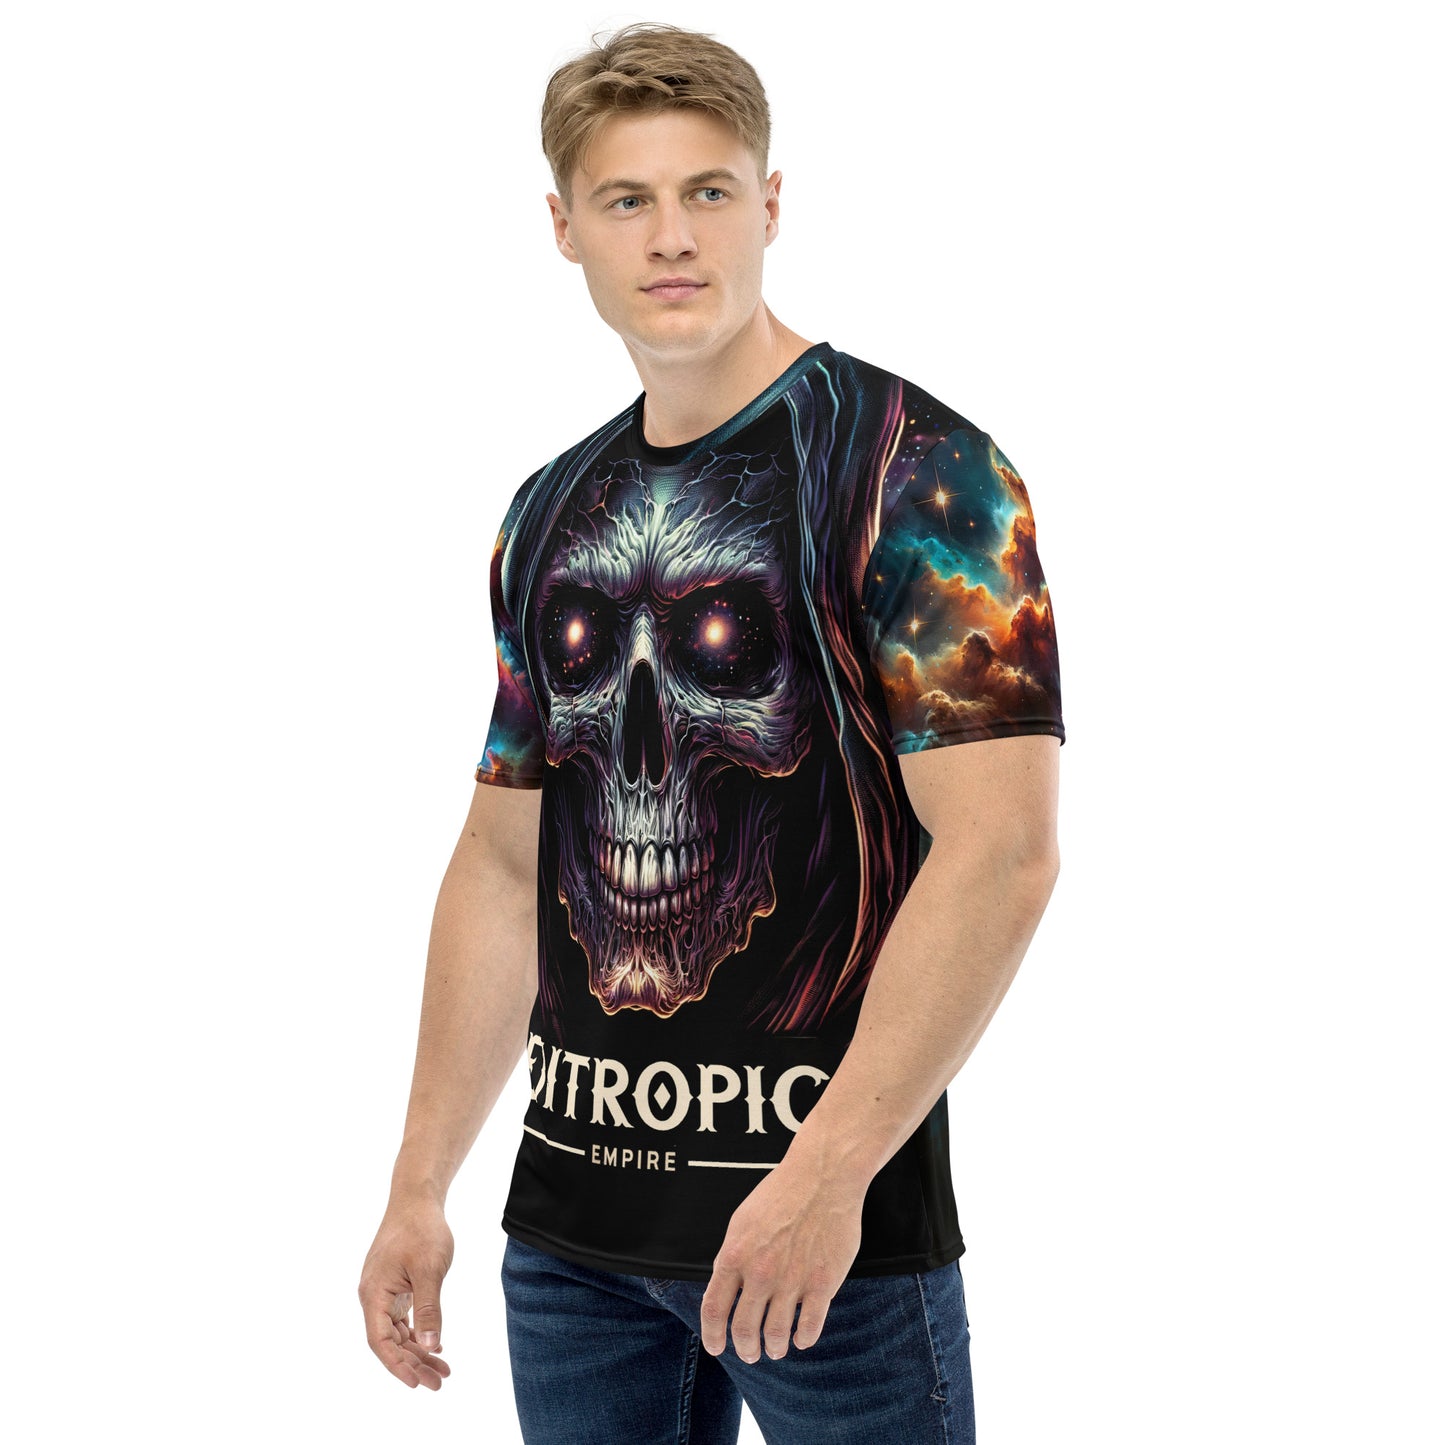 Entropic Empire Men's t-shirt